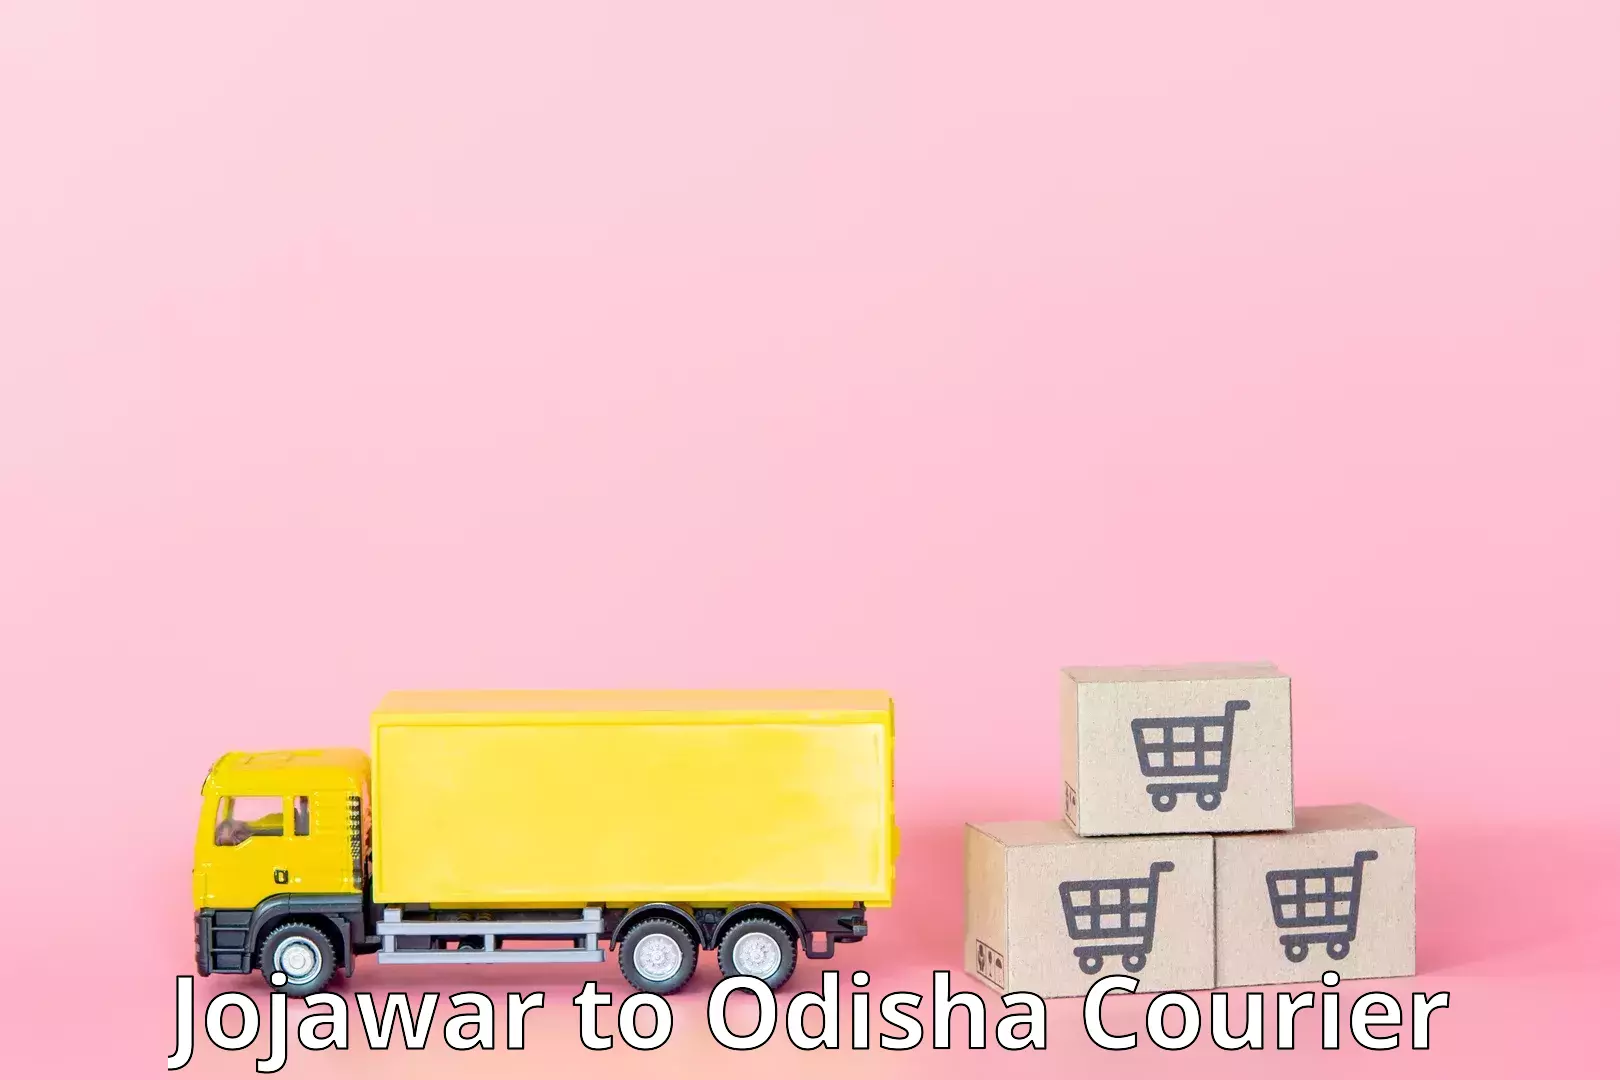 Express mail service Jojawar to Odisha